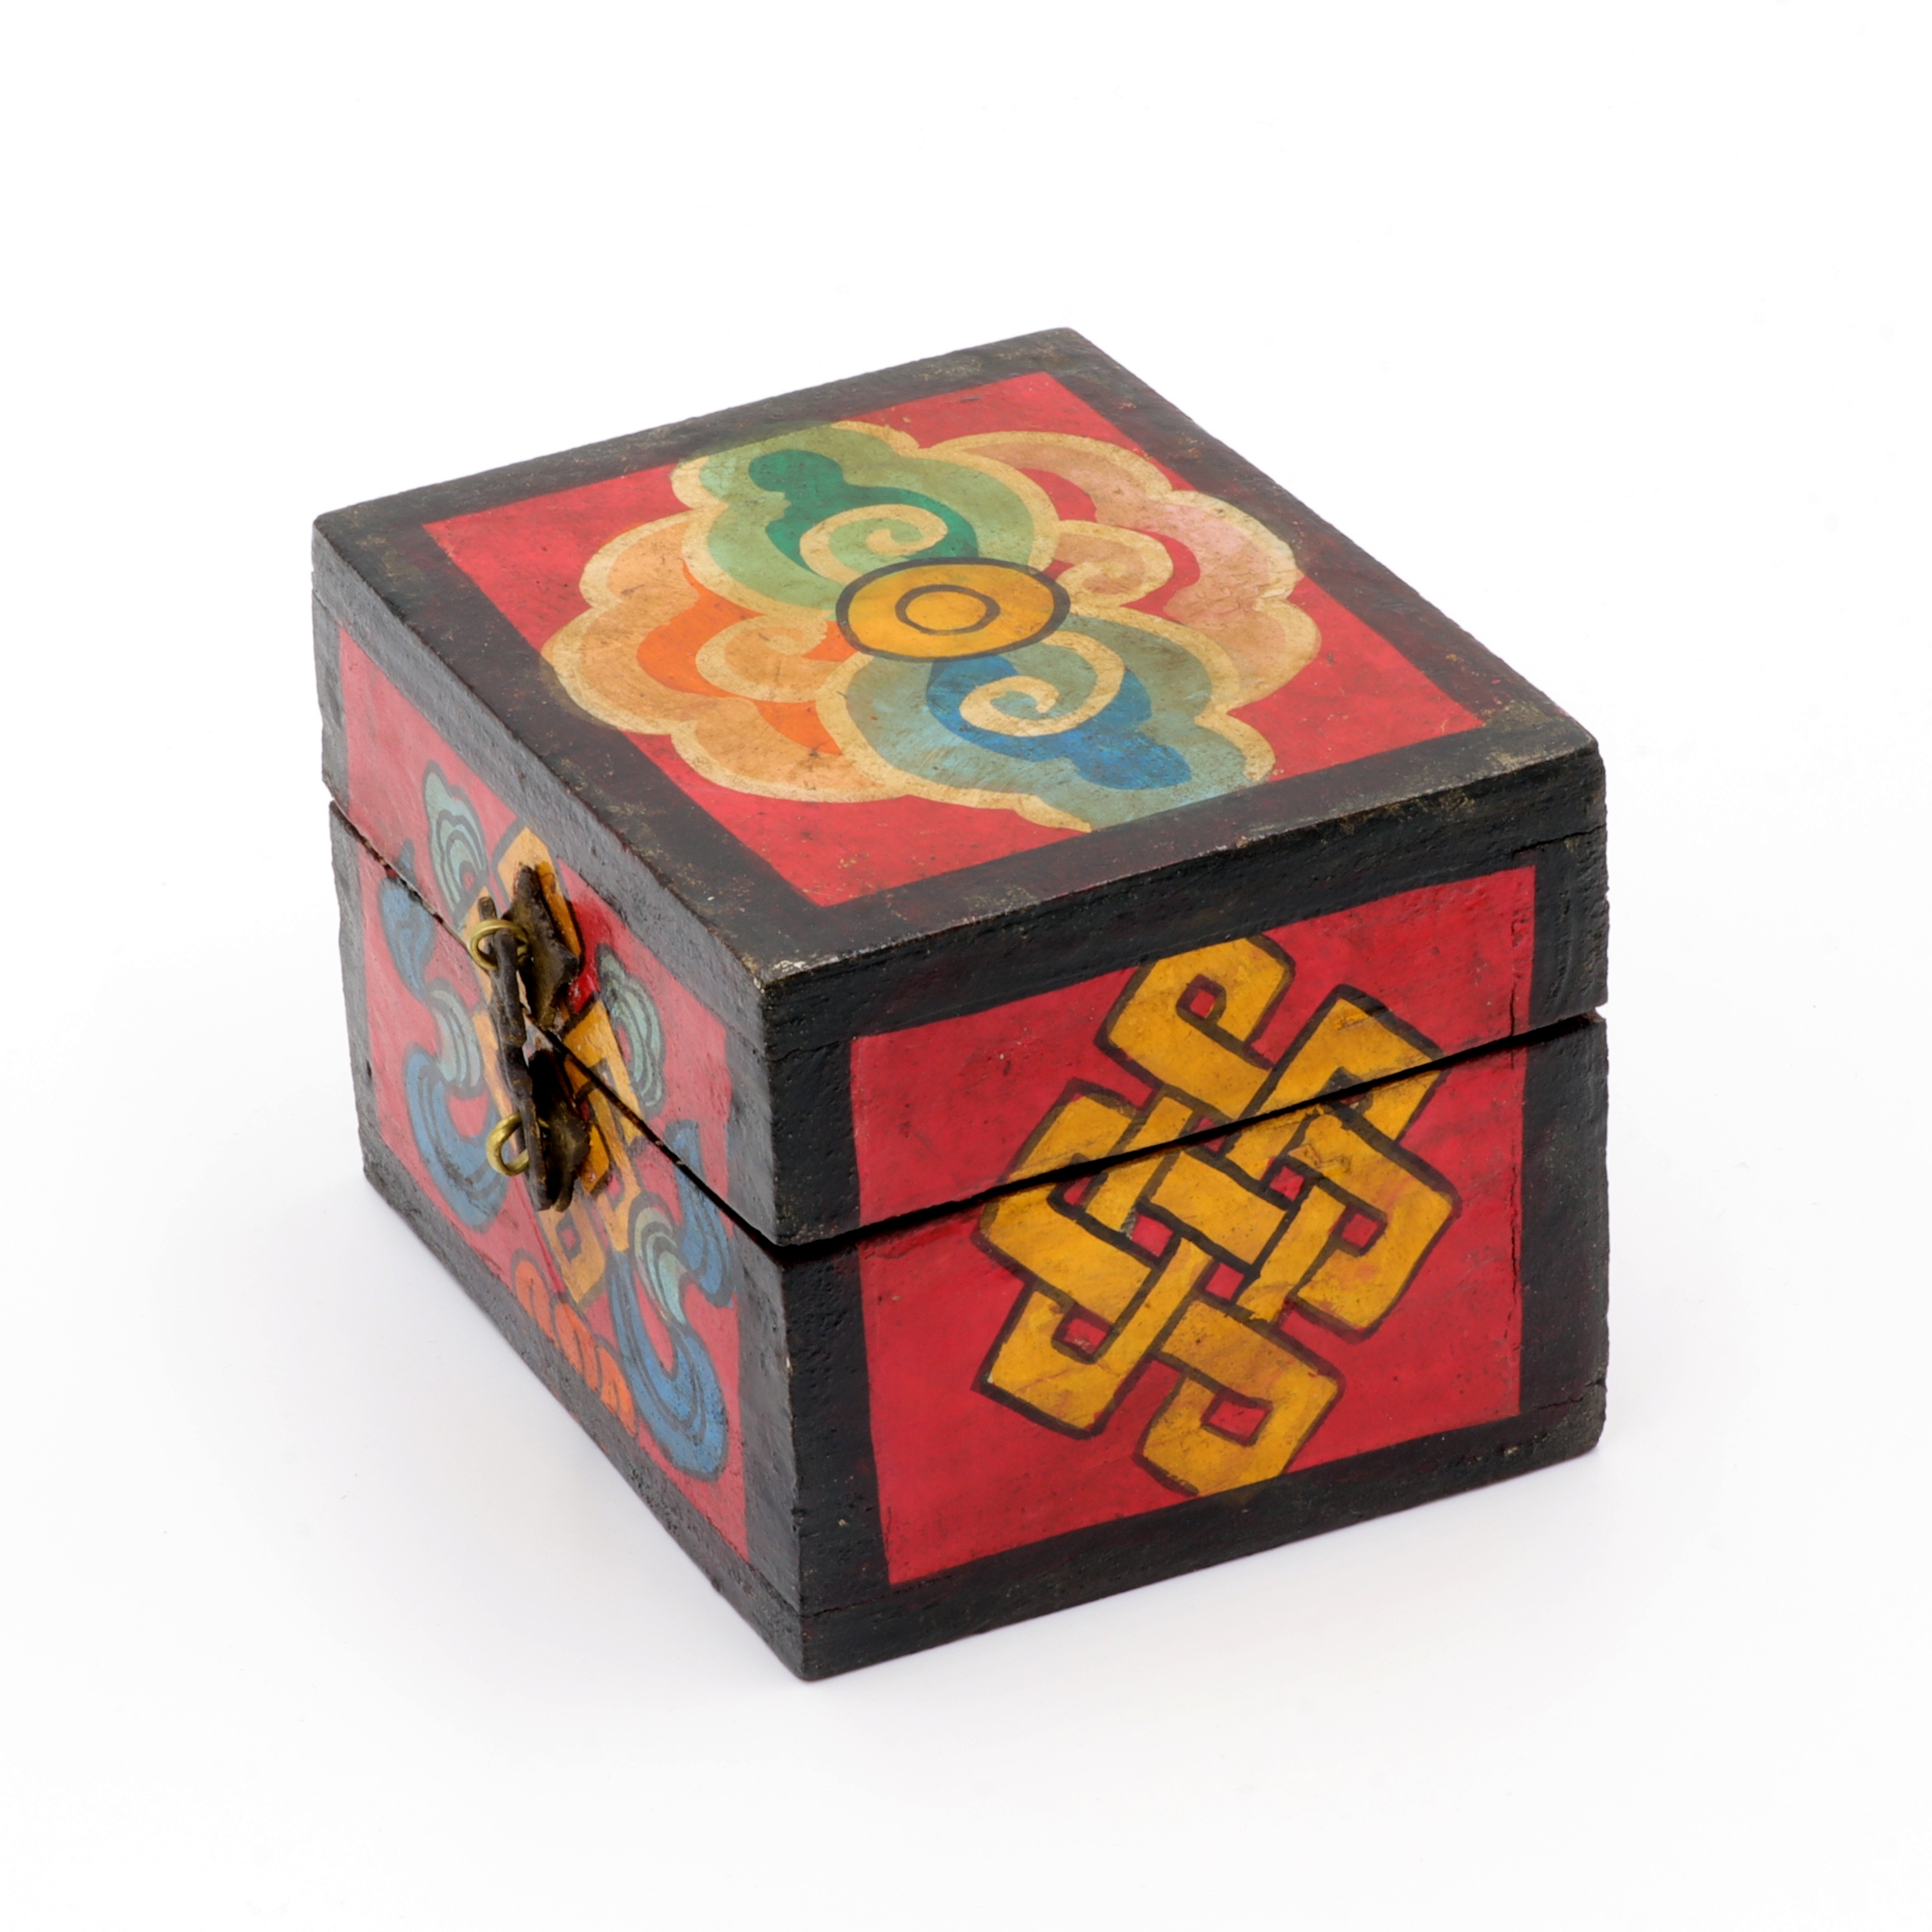 Handbemalte Kiste aus Holz - Endlosknoten - Truhen Design - typisch nepalesiche Farben - hell - fair gehandelt aus Nepal